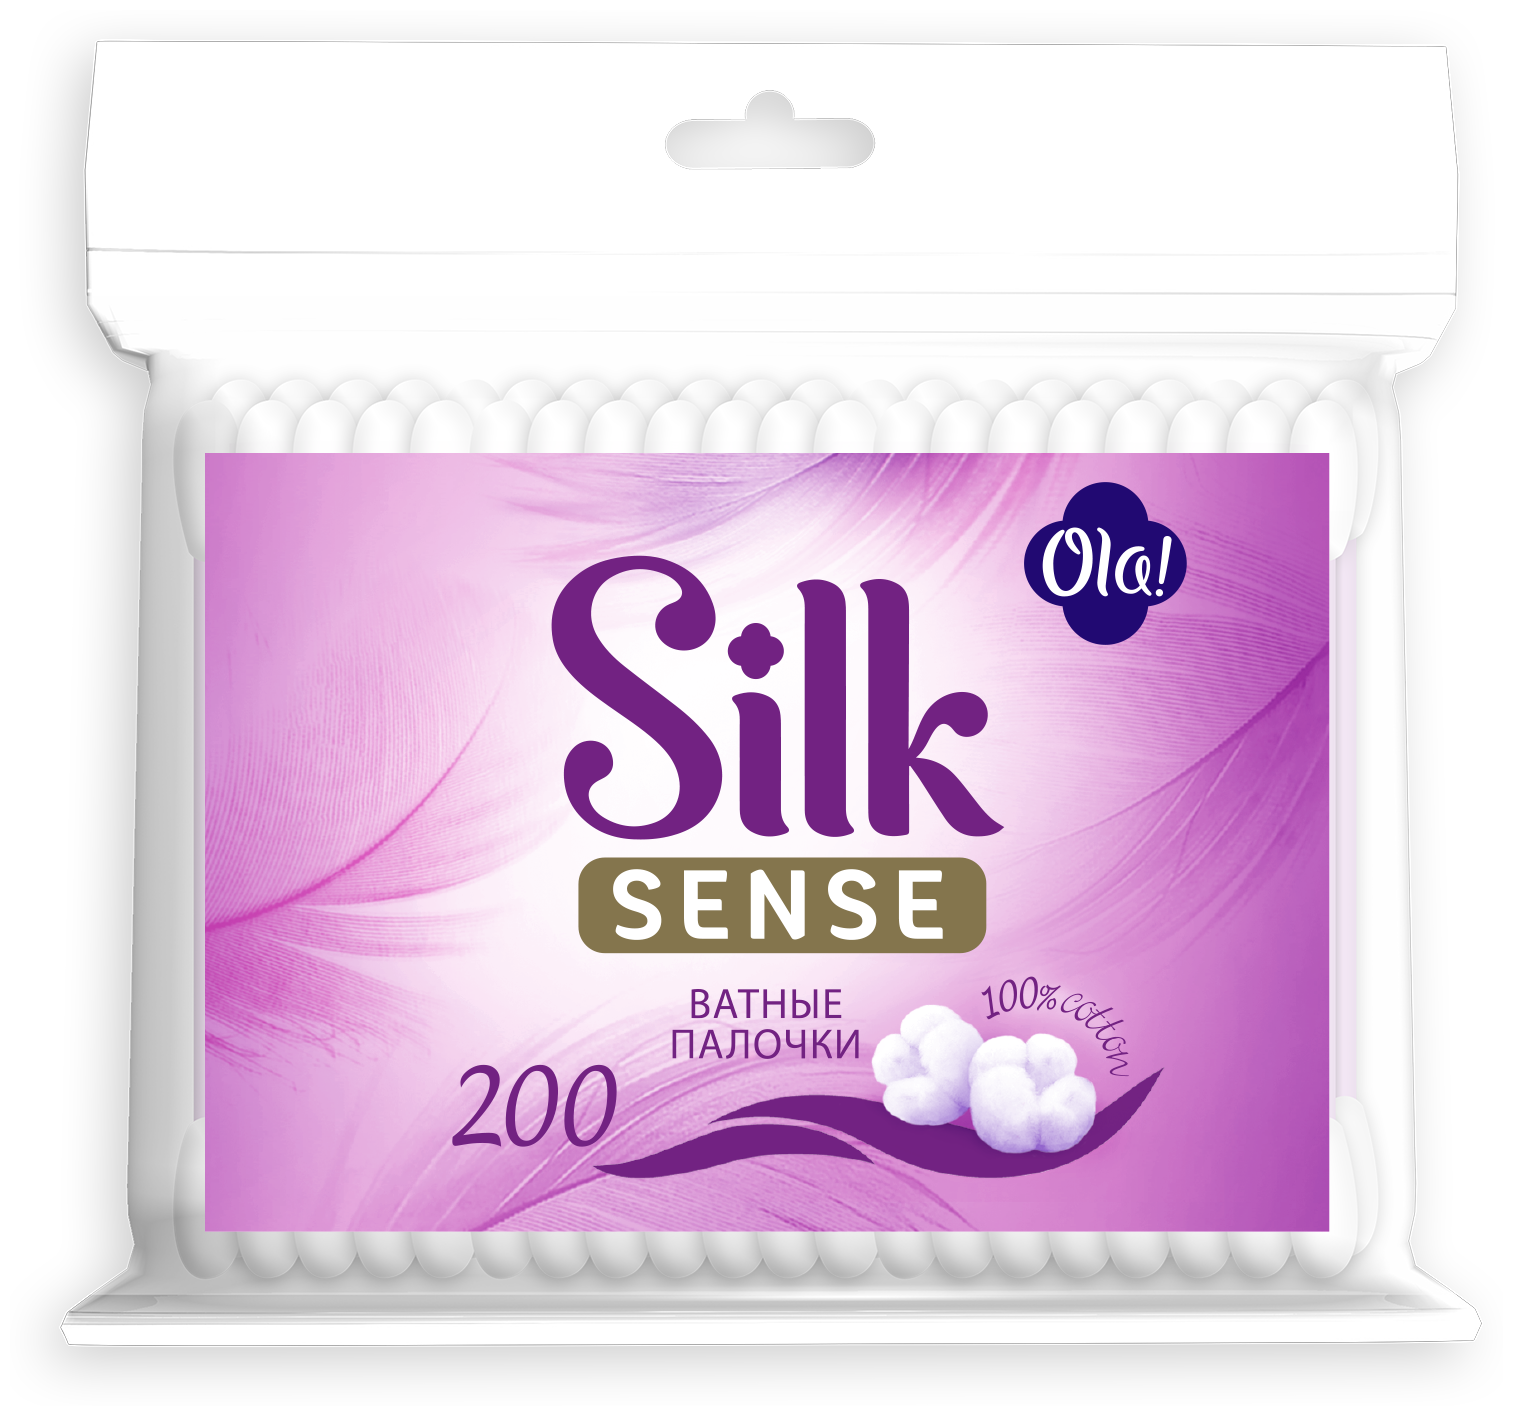 Ola!   Silk Sense, 200 .